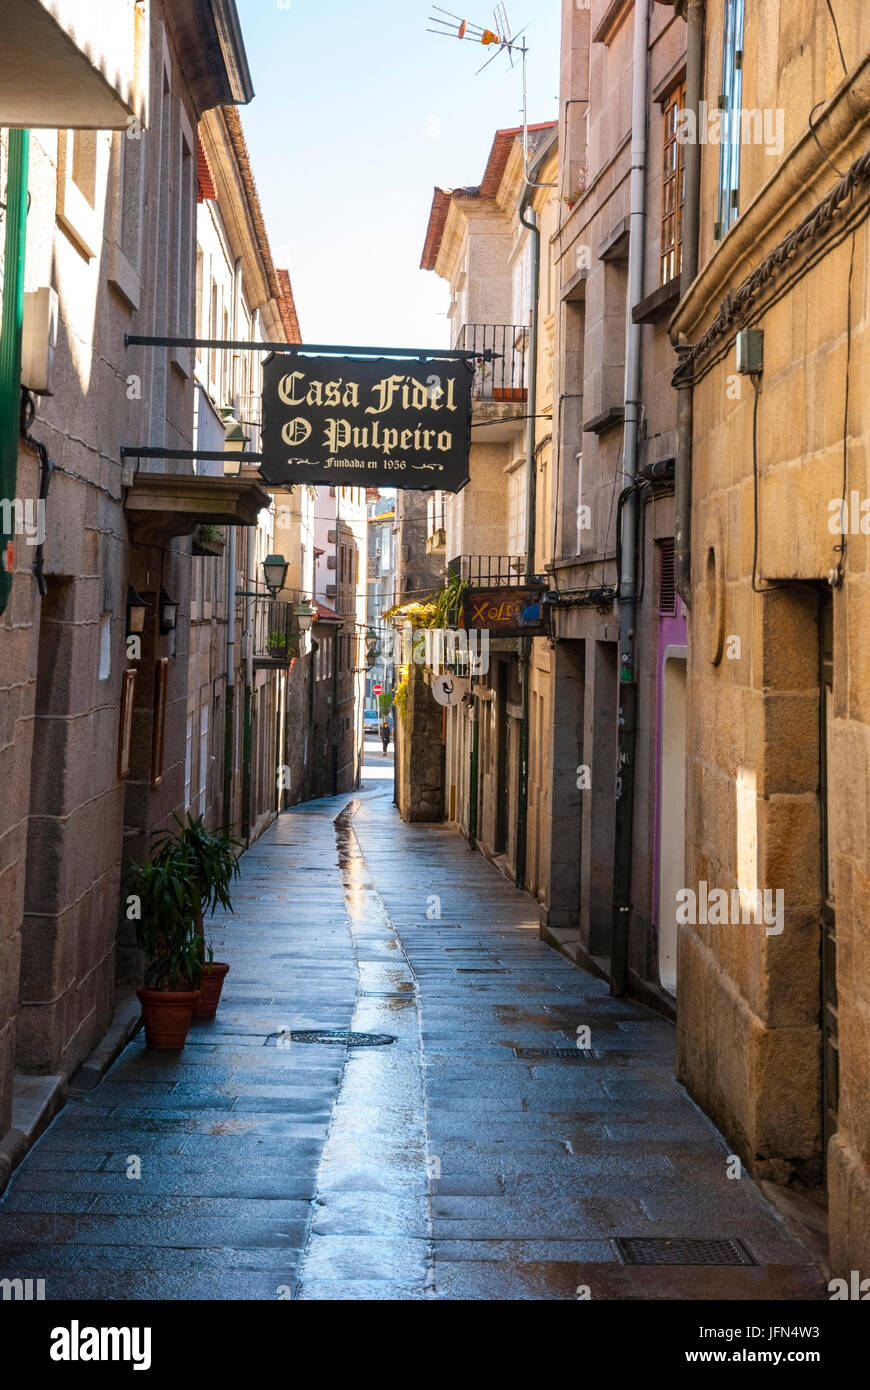 PONTEVEDRA, ESPAGNE - 8 avril : la signalisation dans les vieilles rues de Pontevedra, Galice, Espagne, prises le 8 avril 2013 Banque D'Images